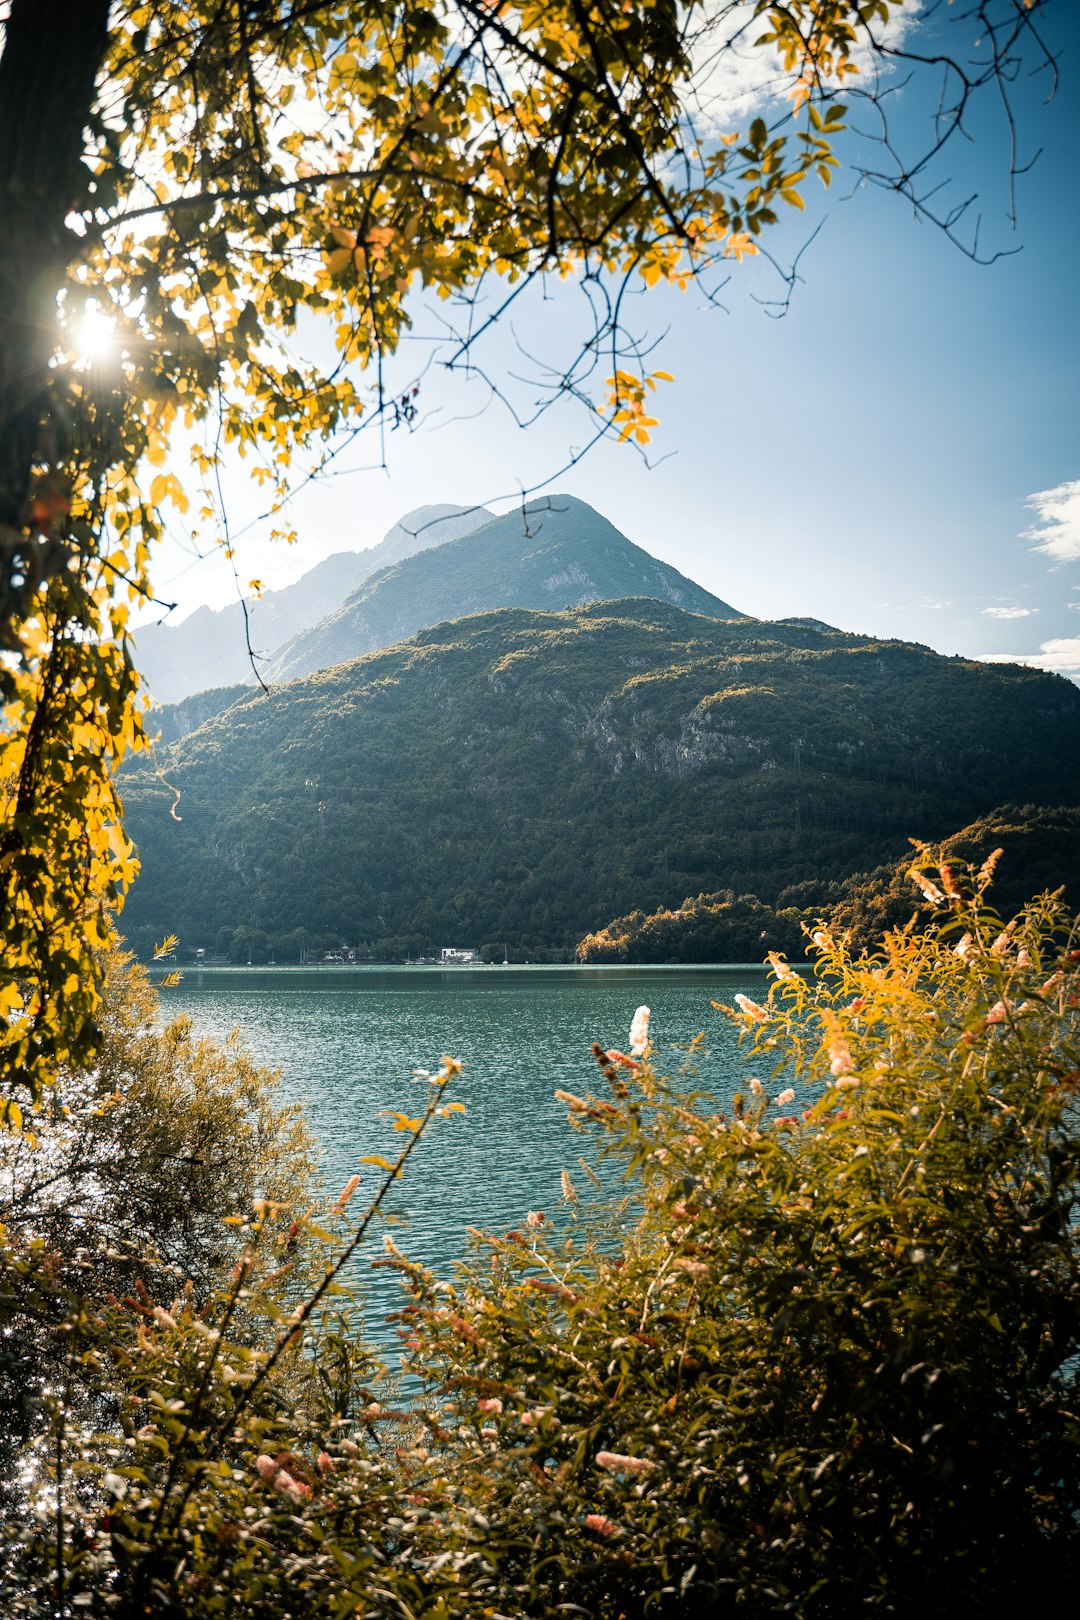 Lake photo spot Comune di Cavazzo Carnico Cividale del Friuli